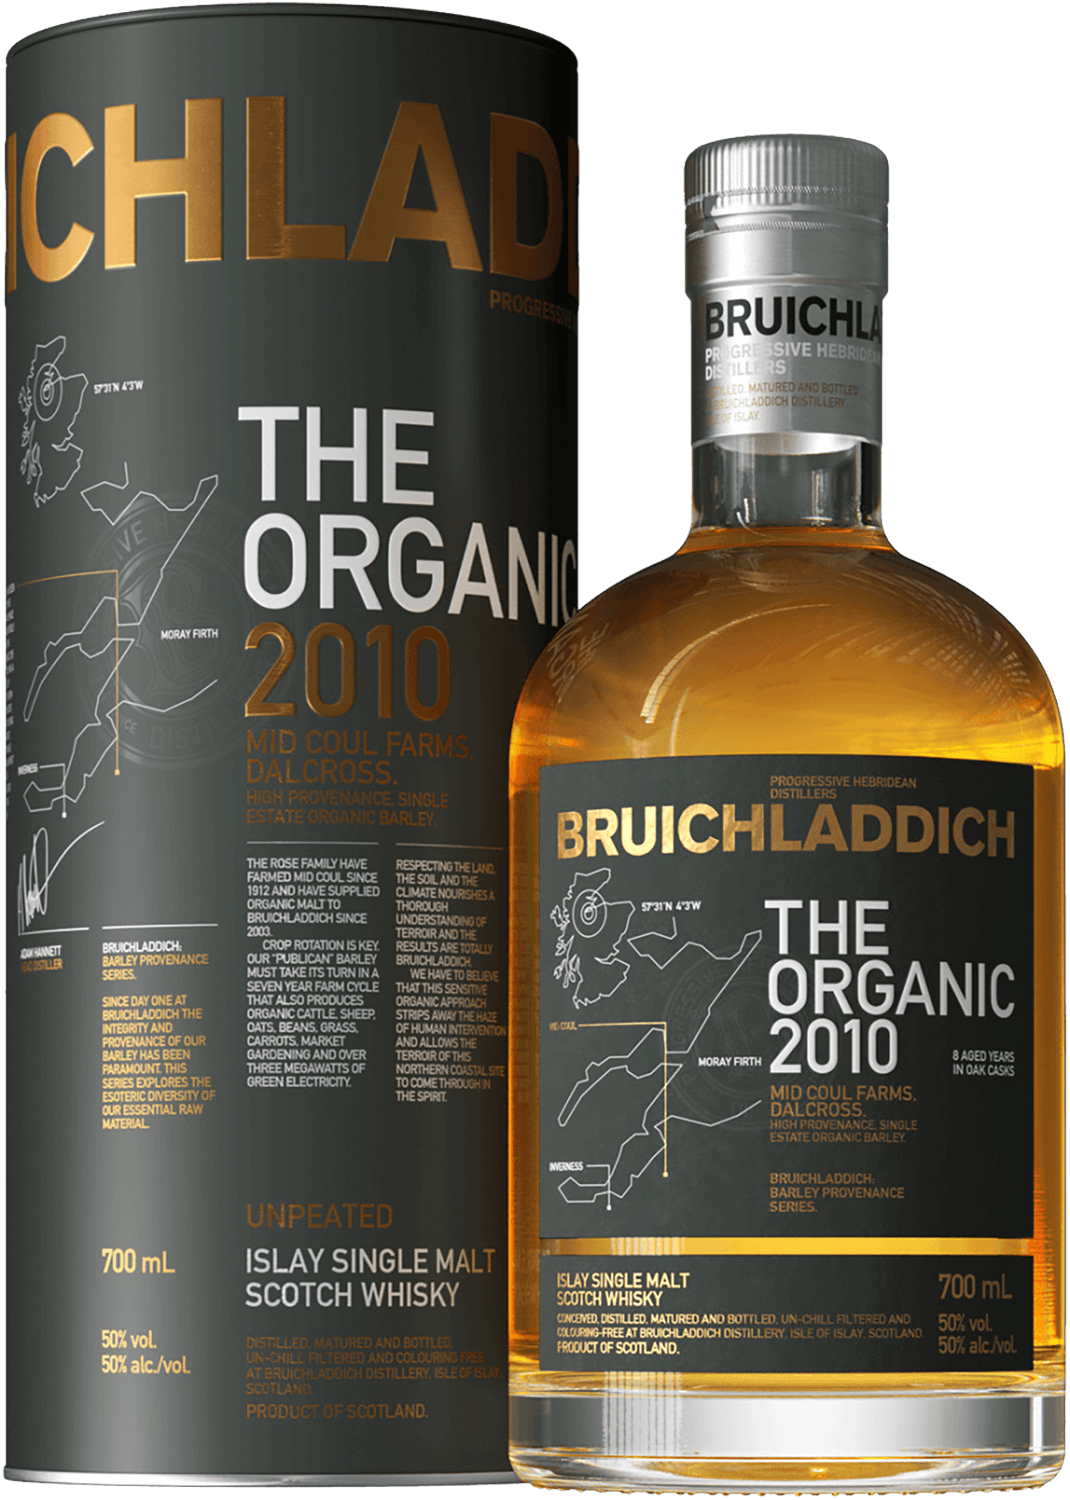 Bruichladdich Organic Islay single malt scotch whisky (gift box) bowmore 15 y o islay single malt scotch whisky gift box